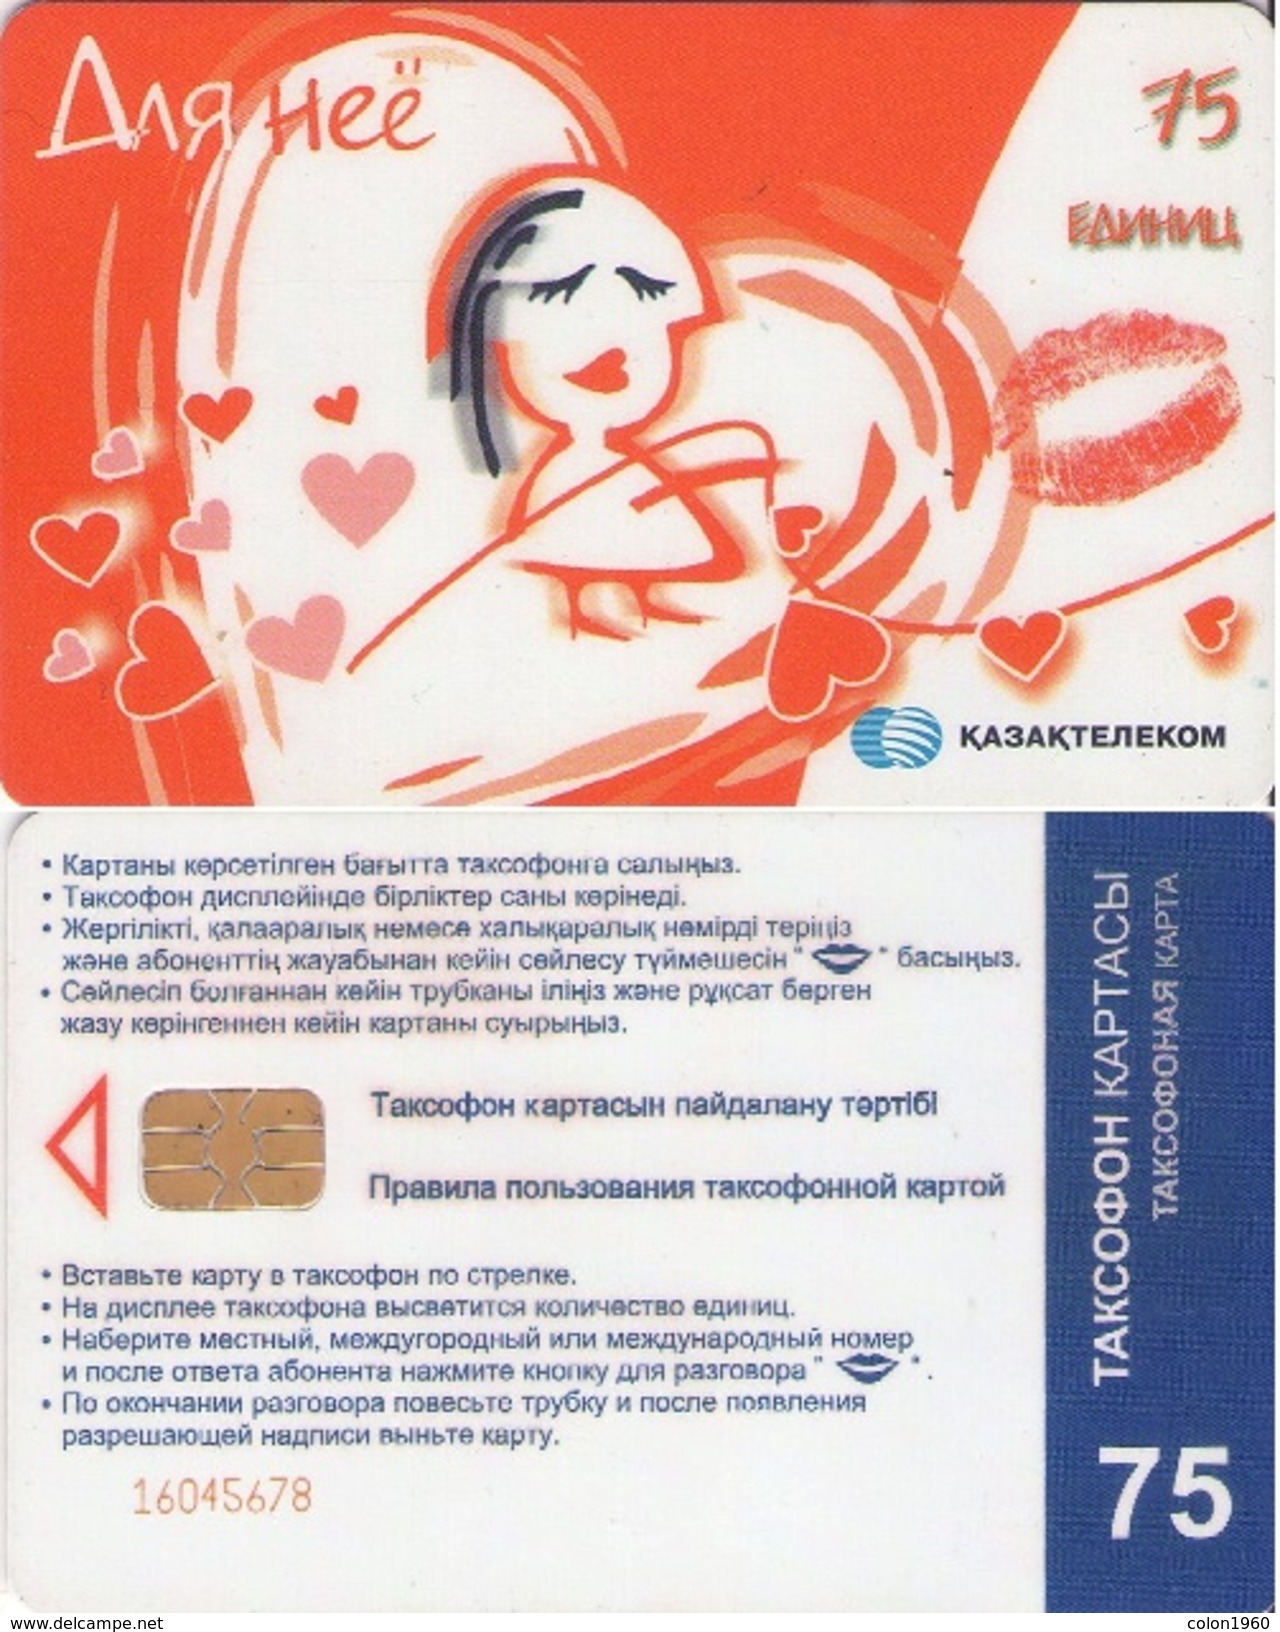 KAZAJSTAN. KZ-KZT-0014. FOR HER LOVE. 75U. 2004. (007) - Kazakistan